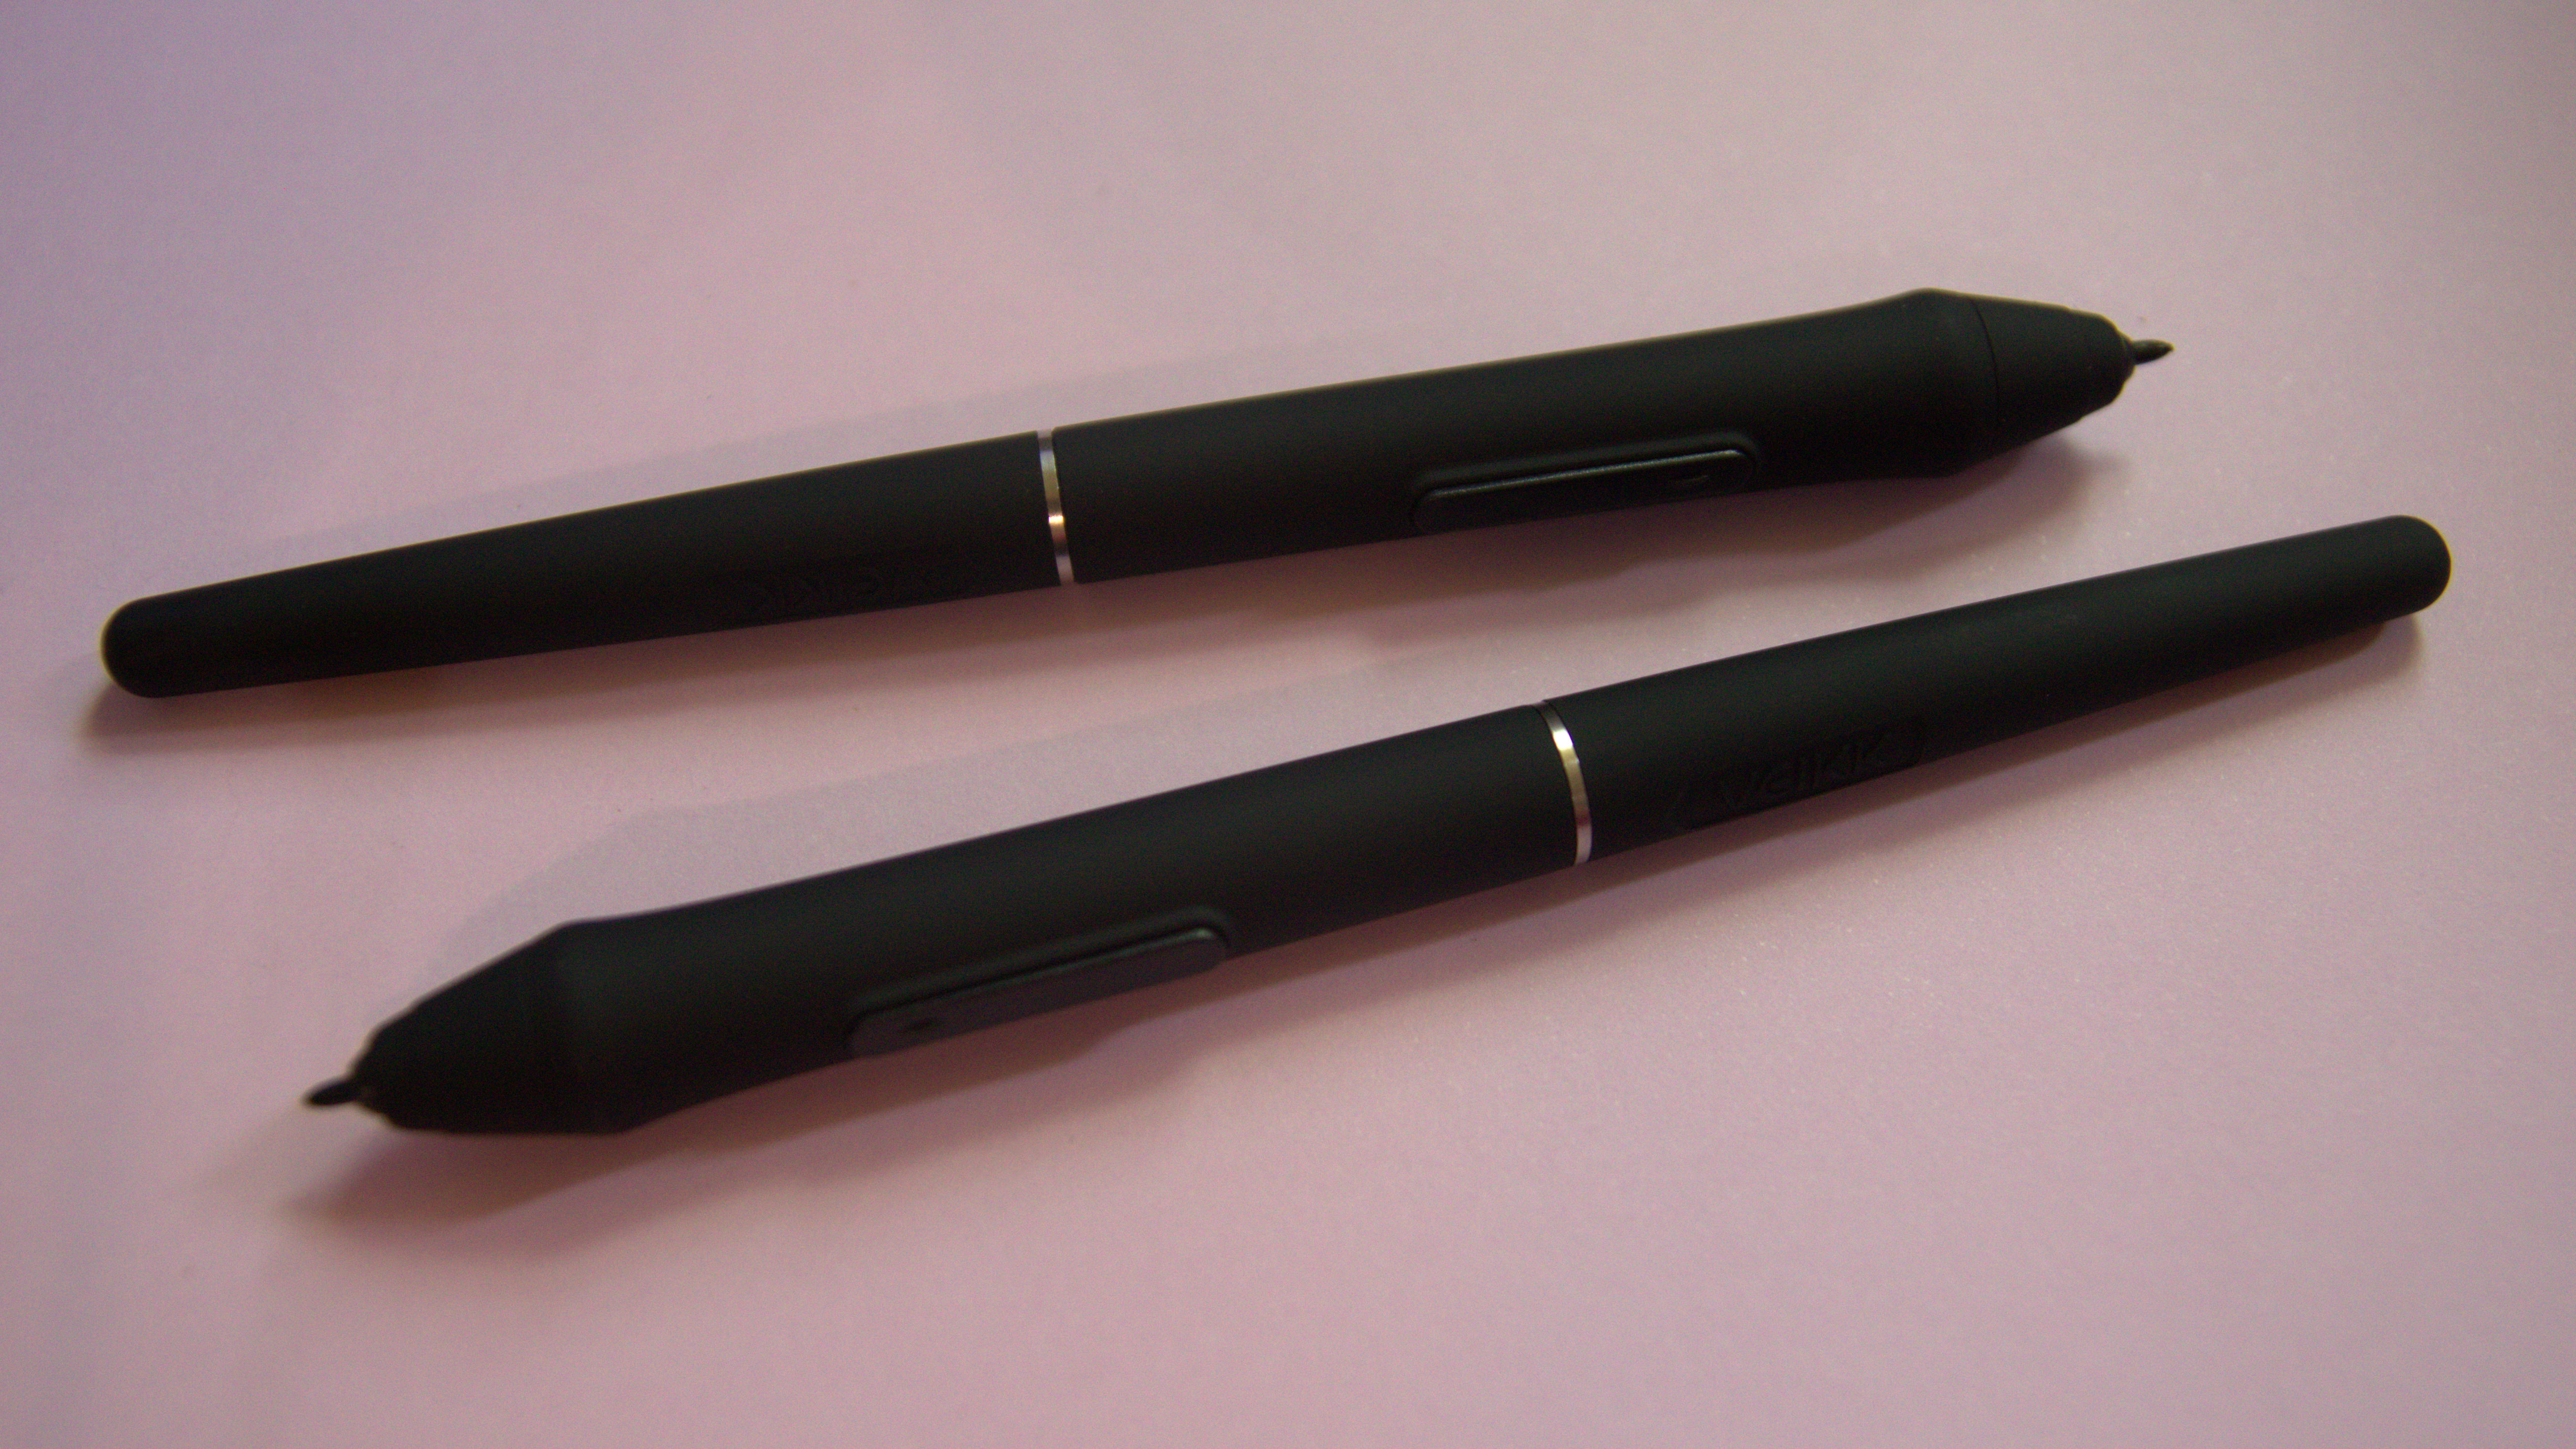 Canetas stylus Veikk VK2200 Pro em um fundo roxo pastel.